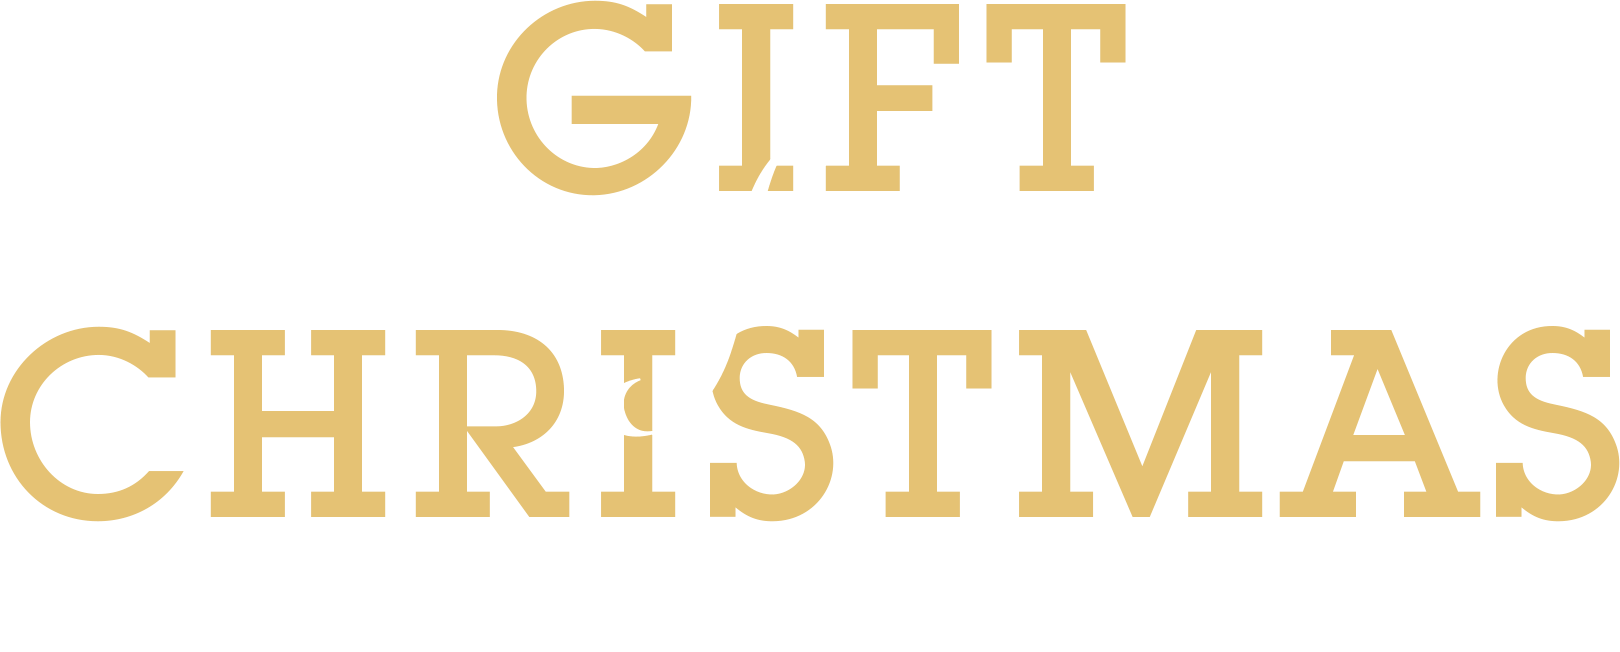 VIORO2020 GIFT for CHRISTMAS